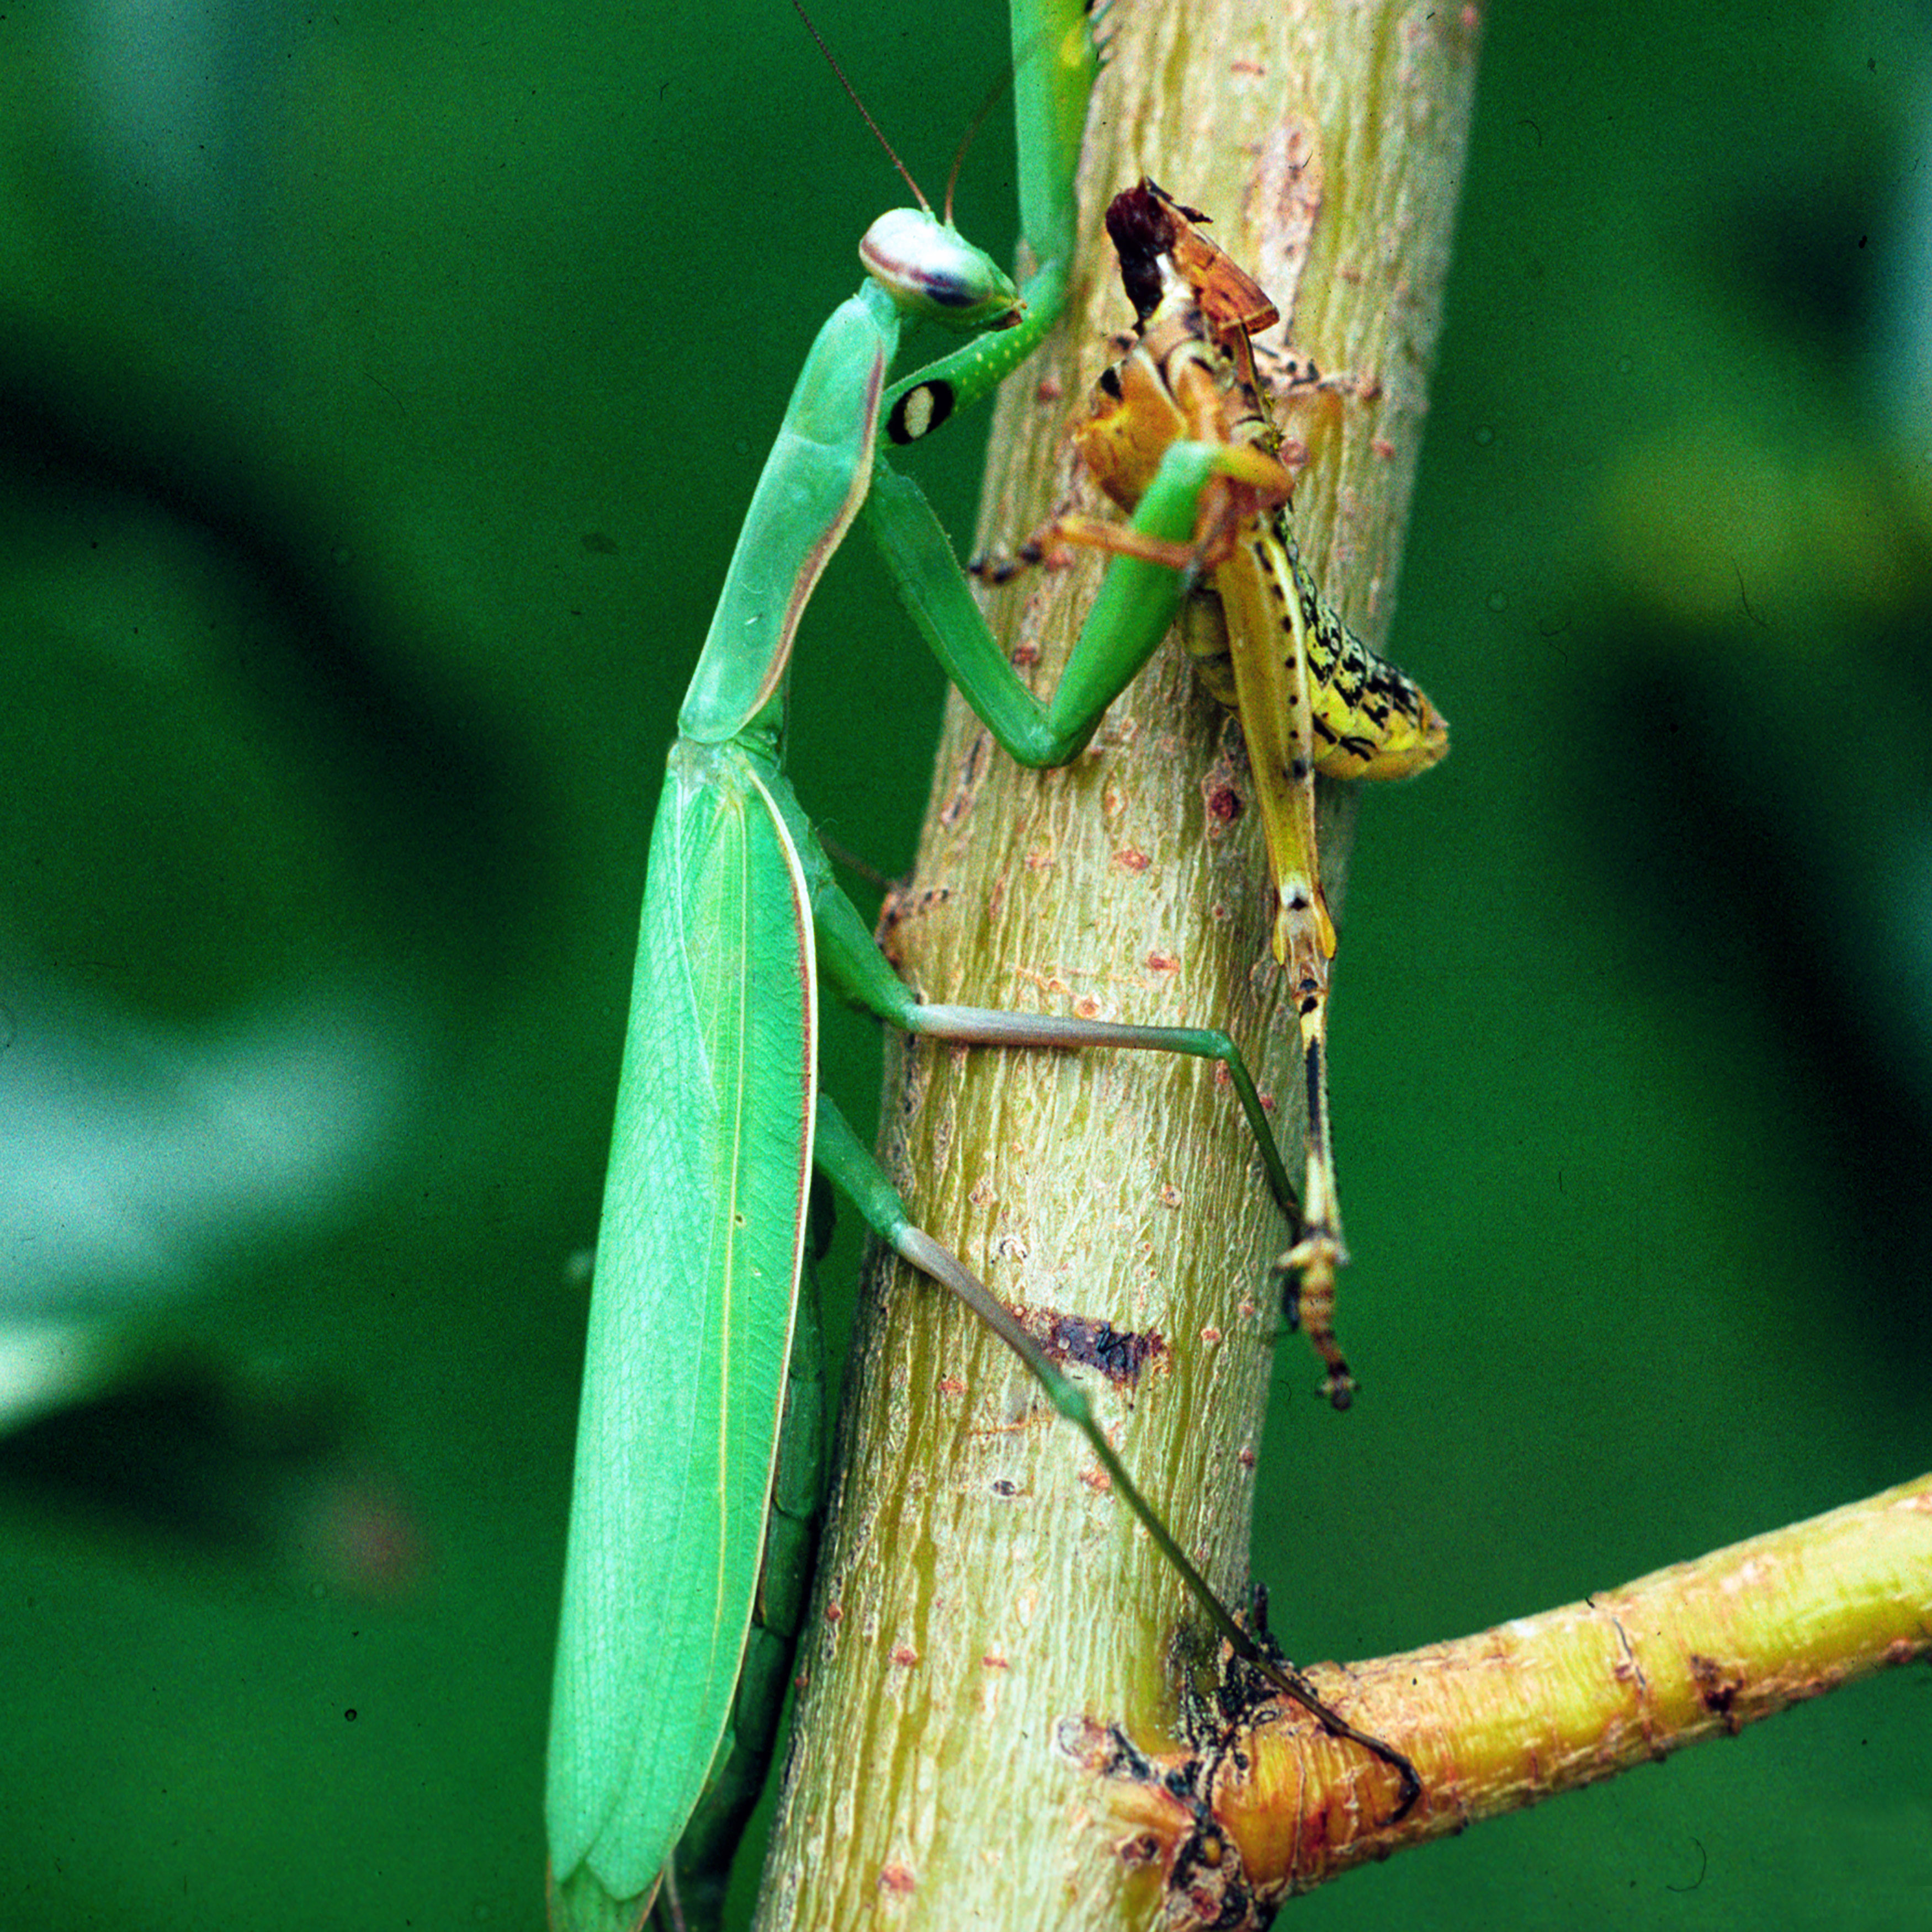 praying mantis information